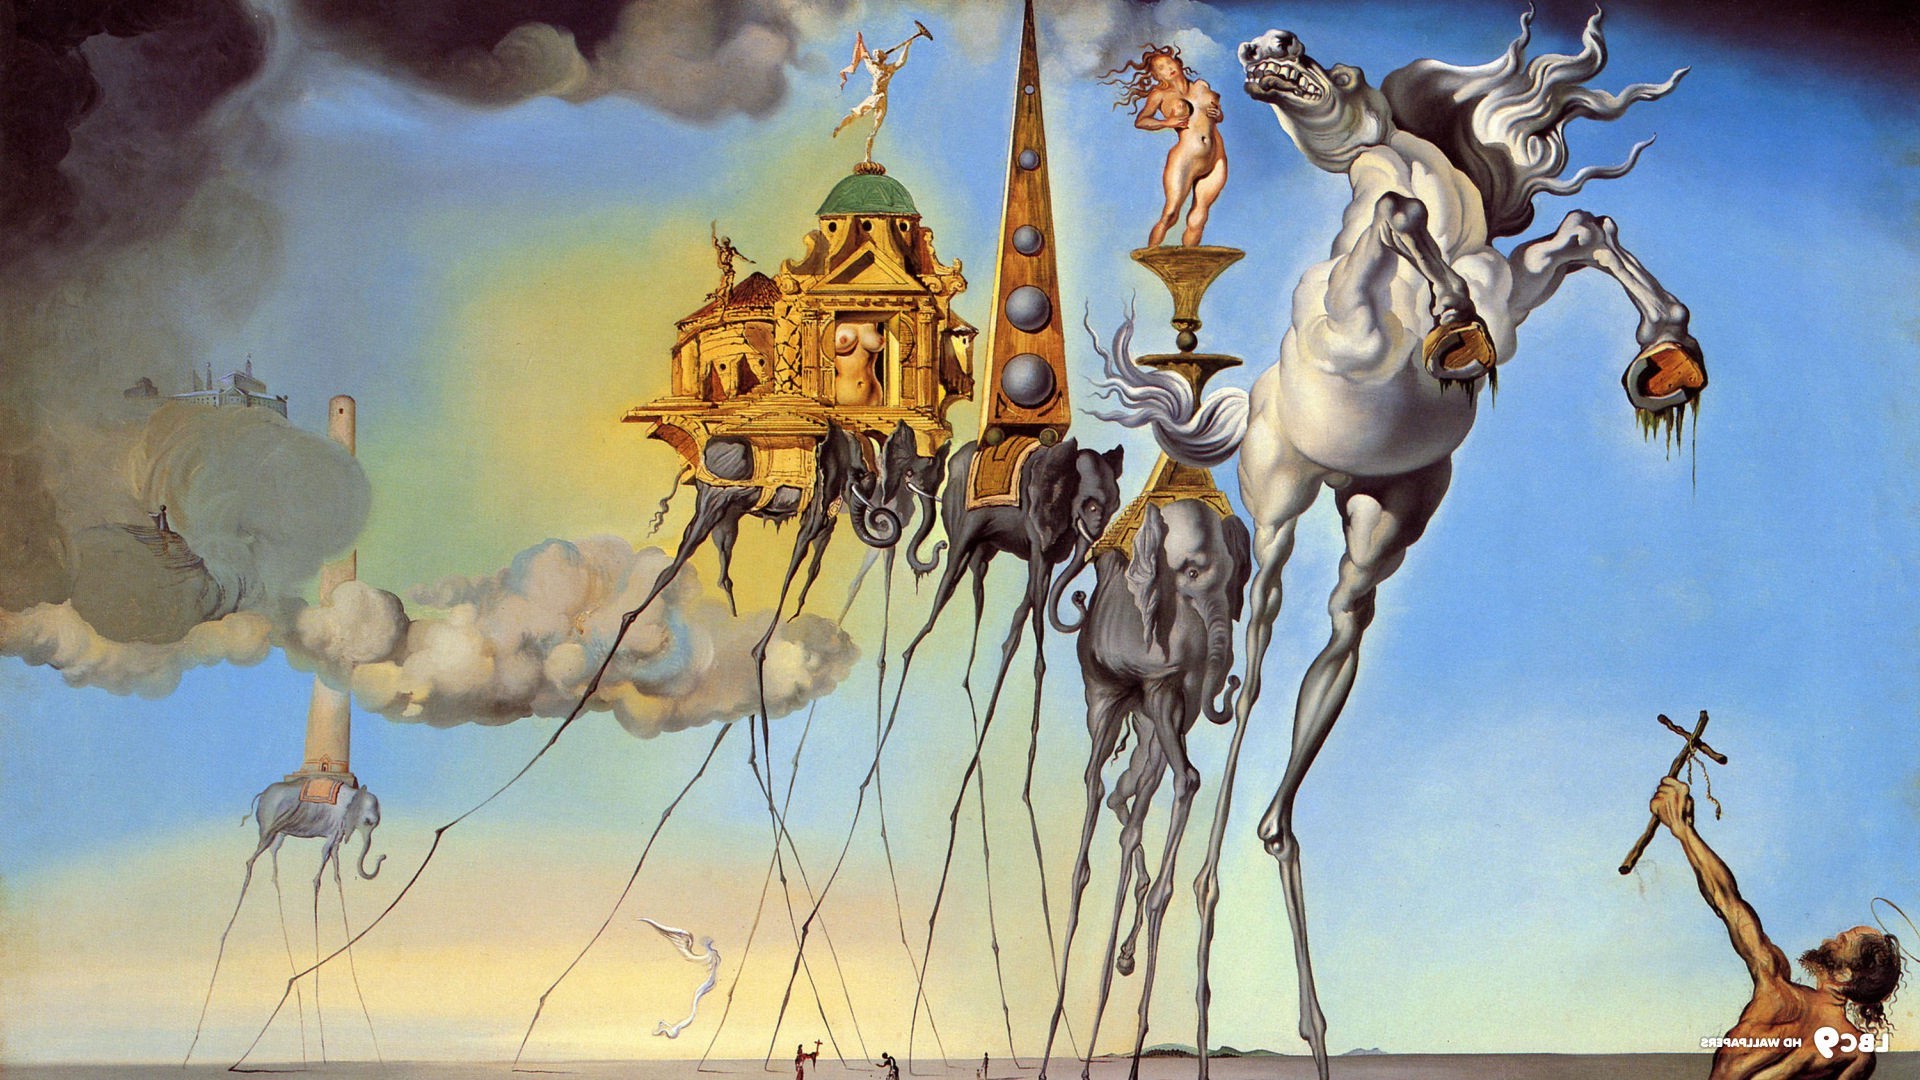 Salvador Dalí, Painting, Fantasy Art, Skull, War, Clocks, Time ...